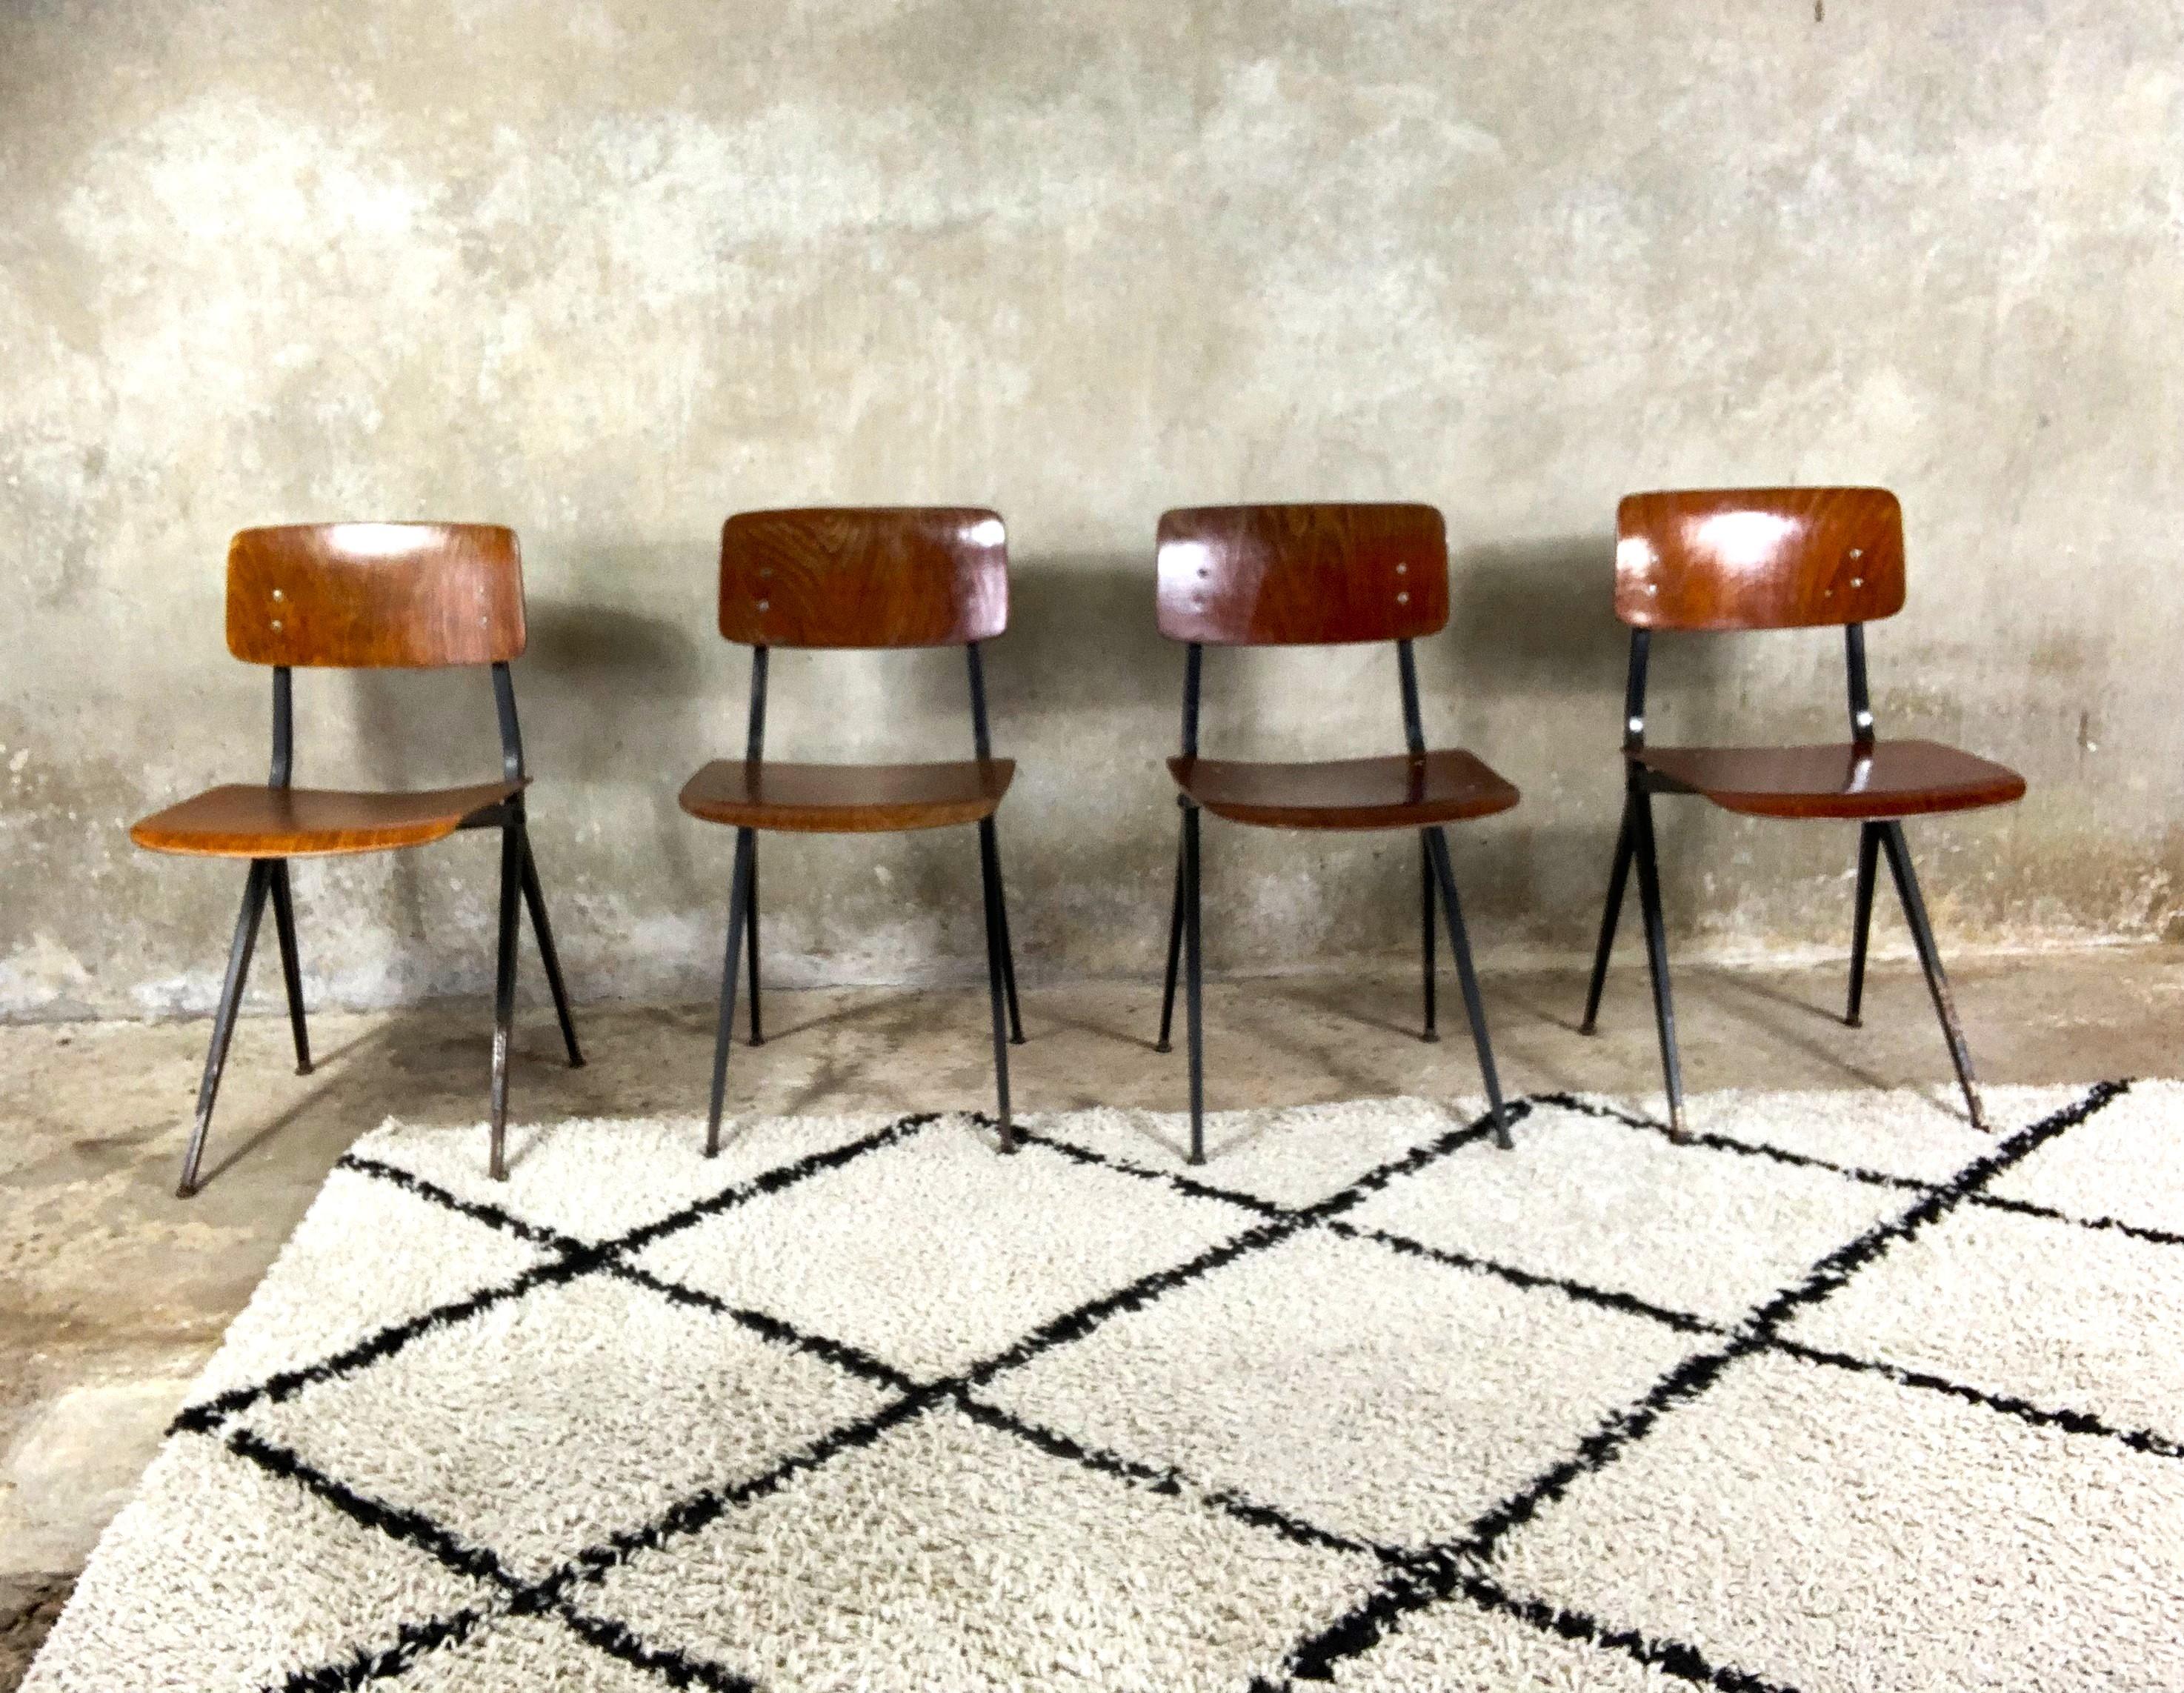 Chaises conçues par Ynske Kooistra pour Marko Holland pour les écoles néerlandaises dans les années 1960. Ces chaises ont une structure très stable et des éléments qui résistent à la destruction. La disposition des pieds confère à l'ensemble un